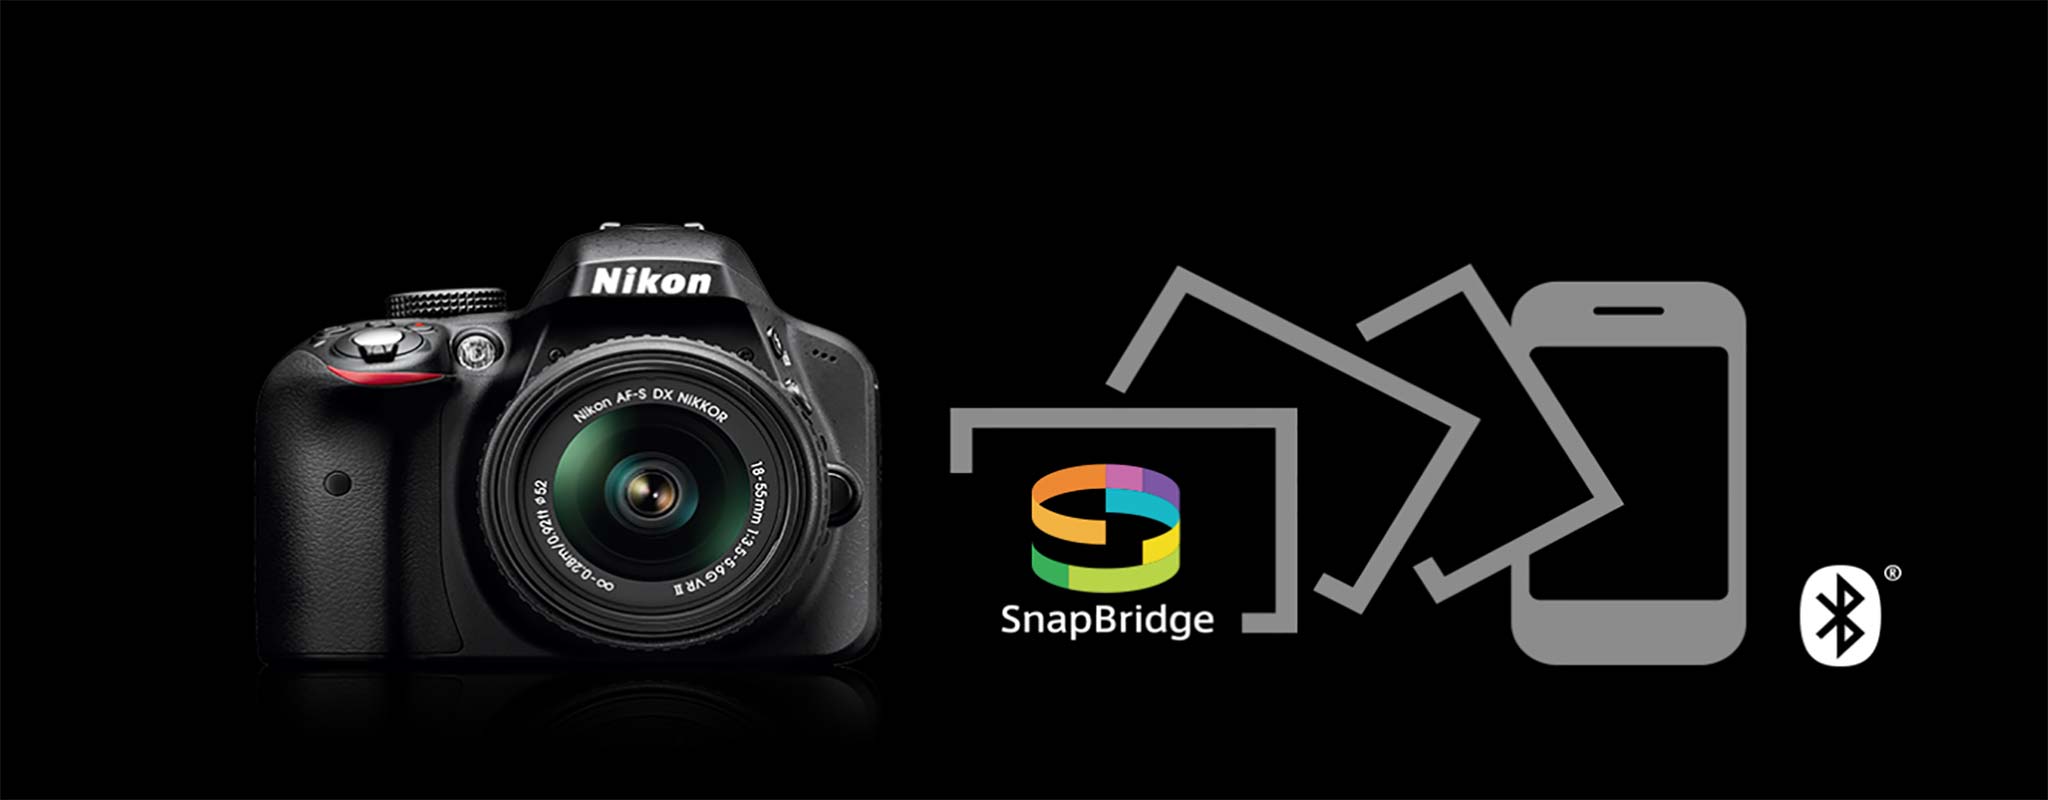 Hướng Dẫn Kết Nối Máy Ảnh Nikon Với Smartphone Bằng Ứng Dụng Snapbridge